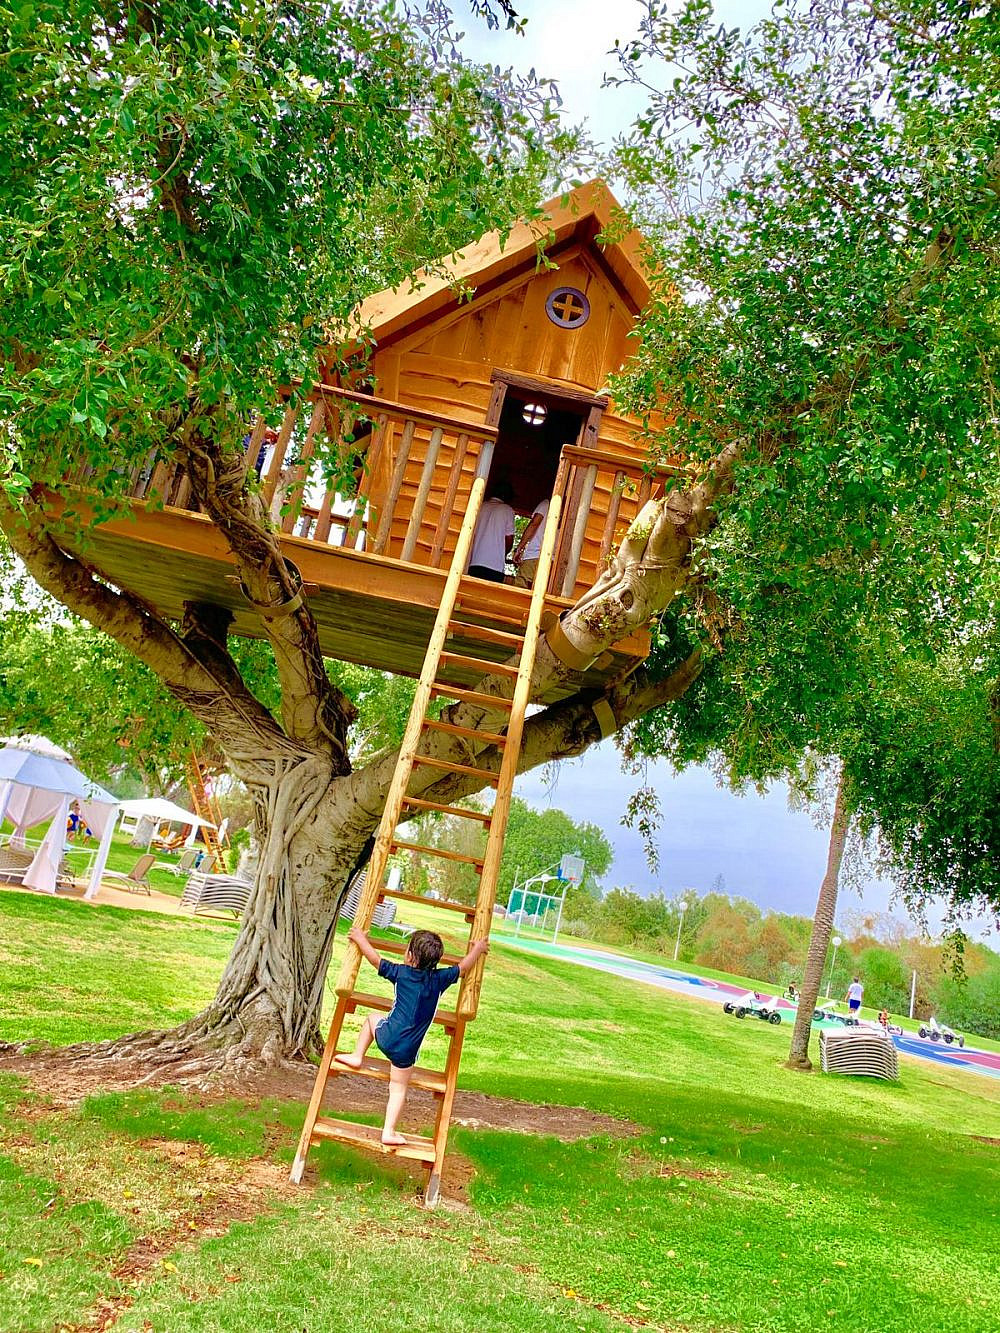 בית עץ בדן קיסריה ריזורט | צילום ליגל מכני